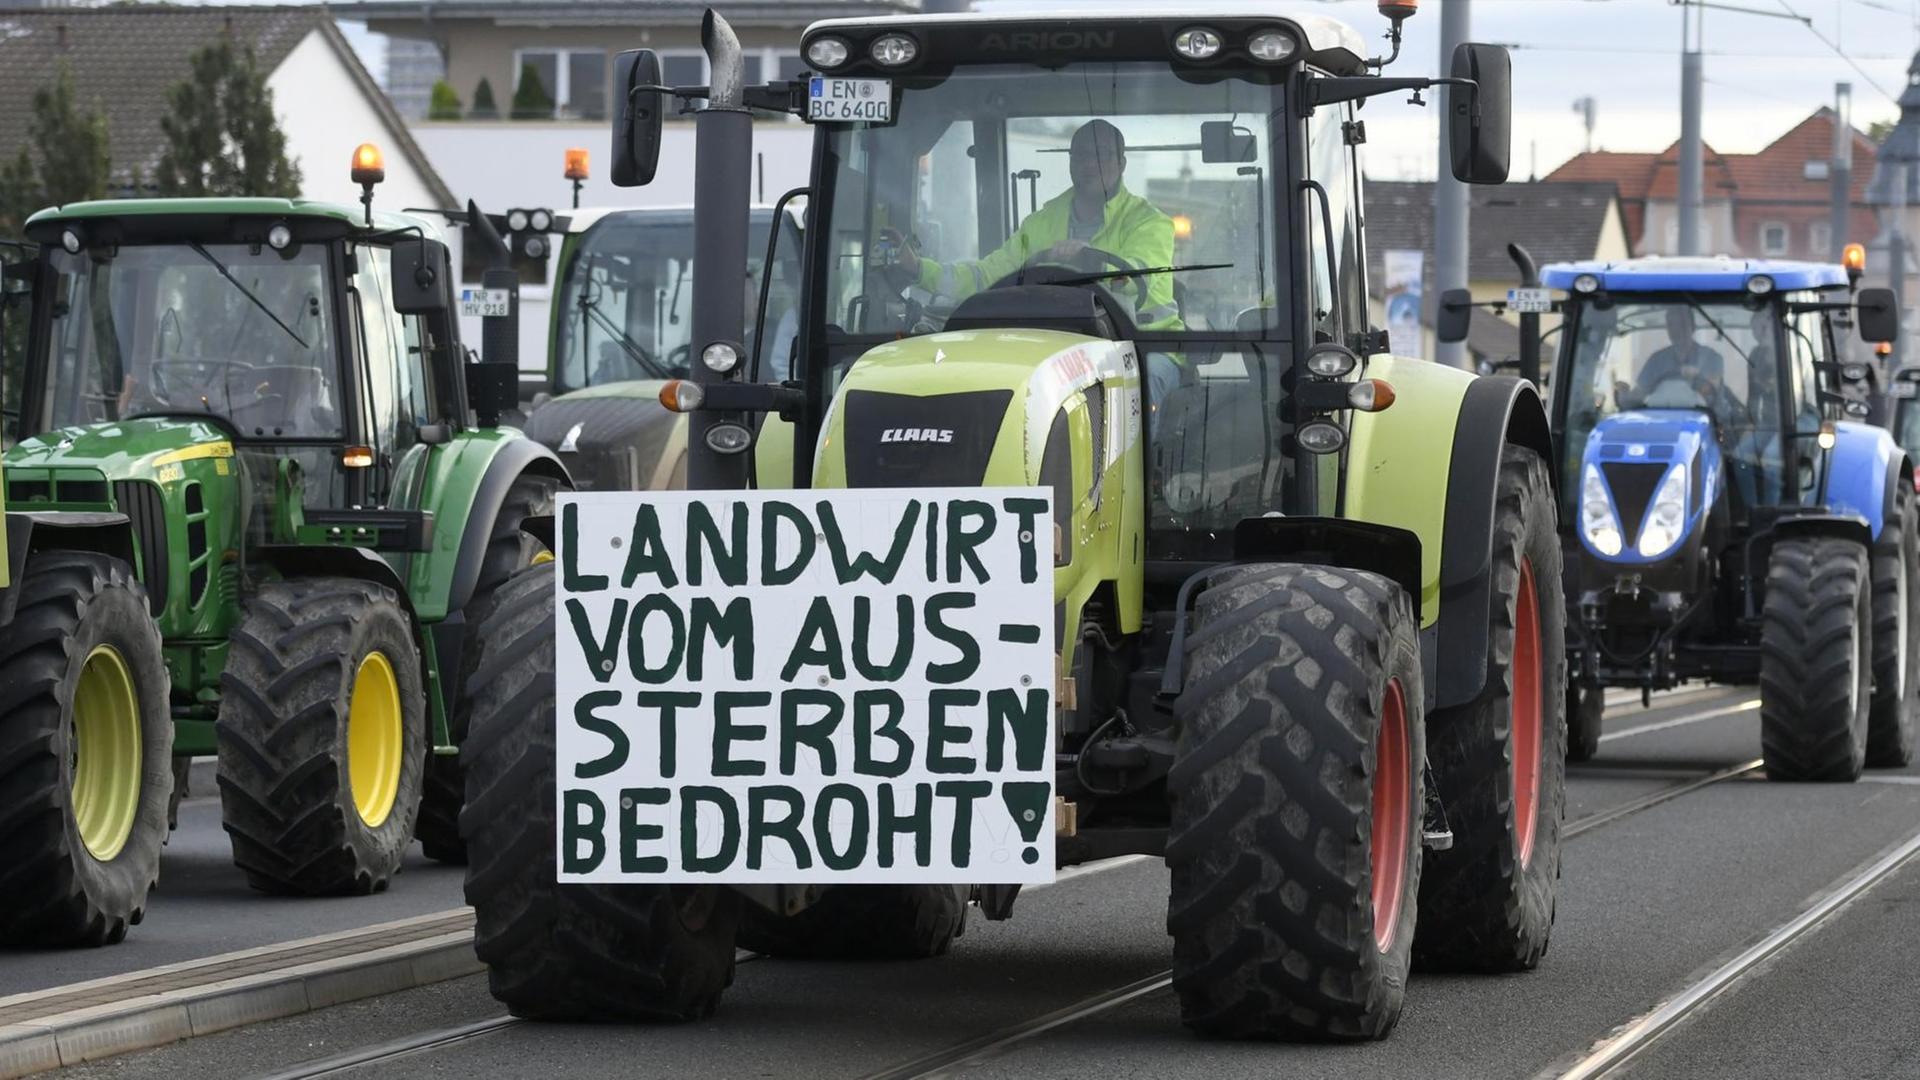 Traktor mit Protestplakat mit der Aufschrift "Landwirt vom Aussterben bedroht".